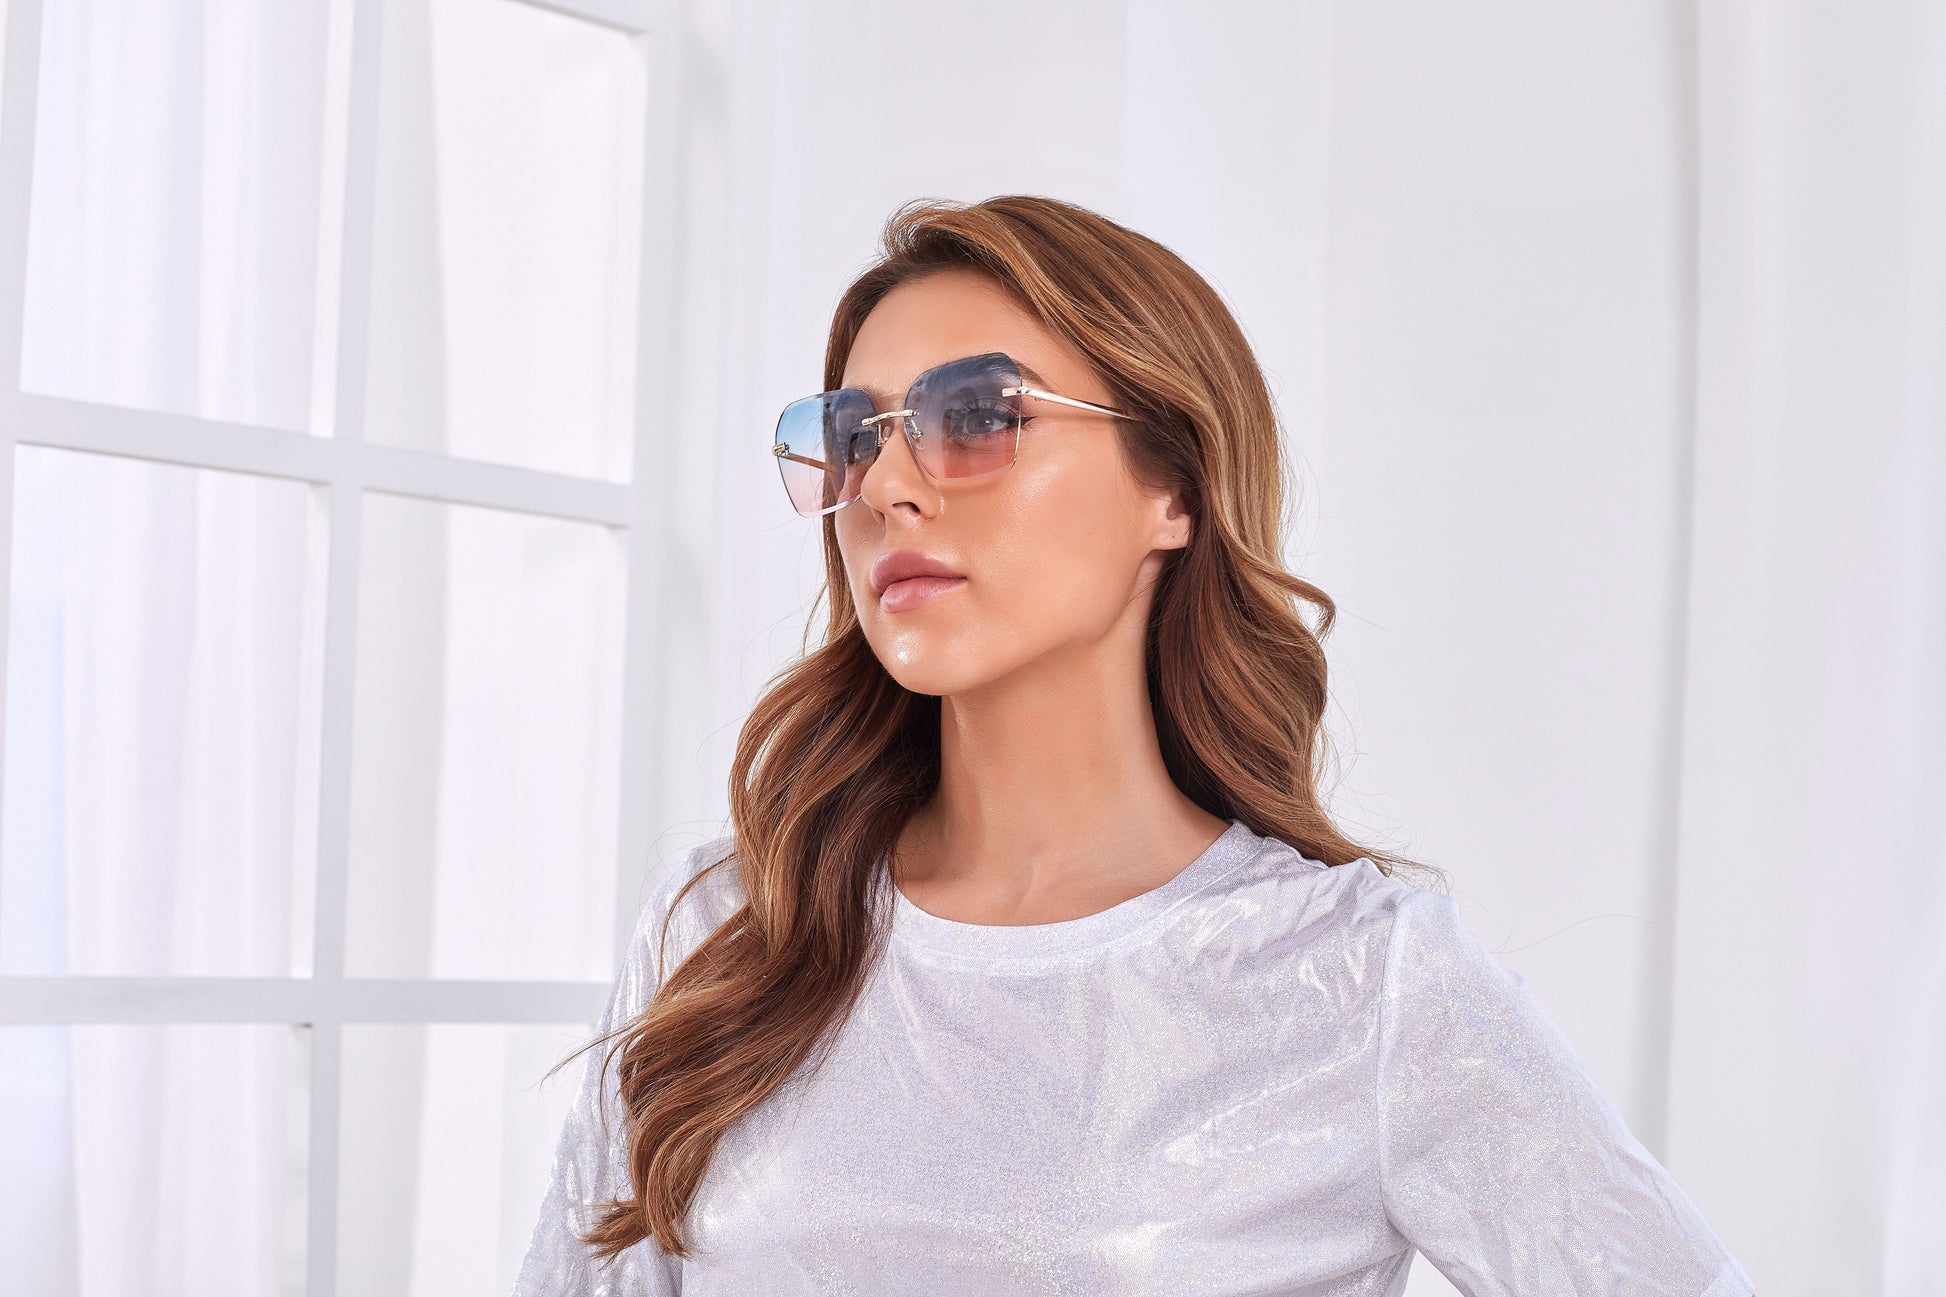 Trendy two tone rimless sunglasses - starcopia design store